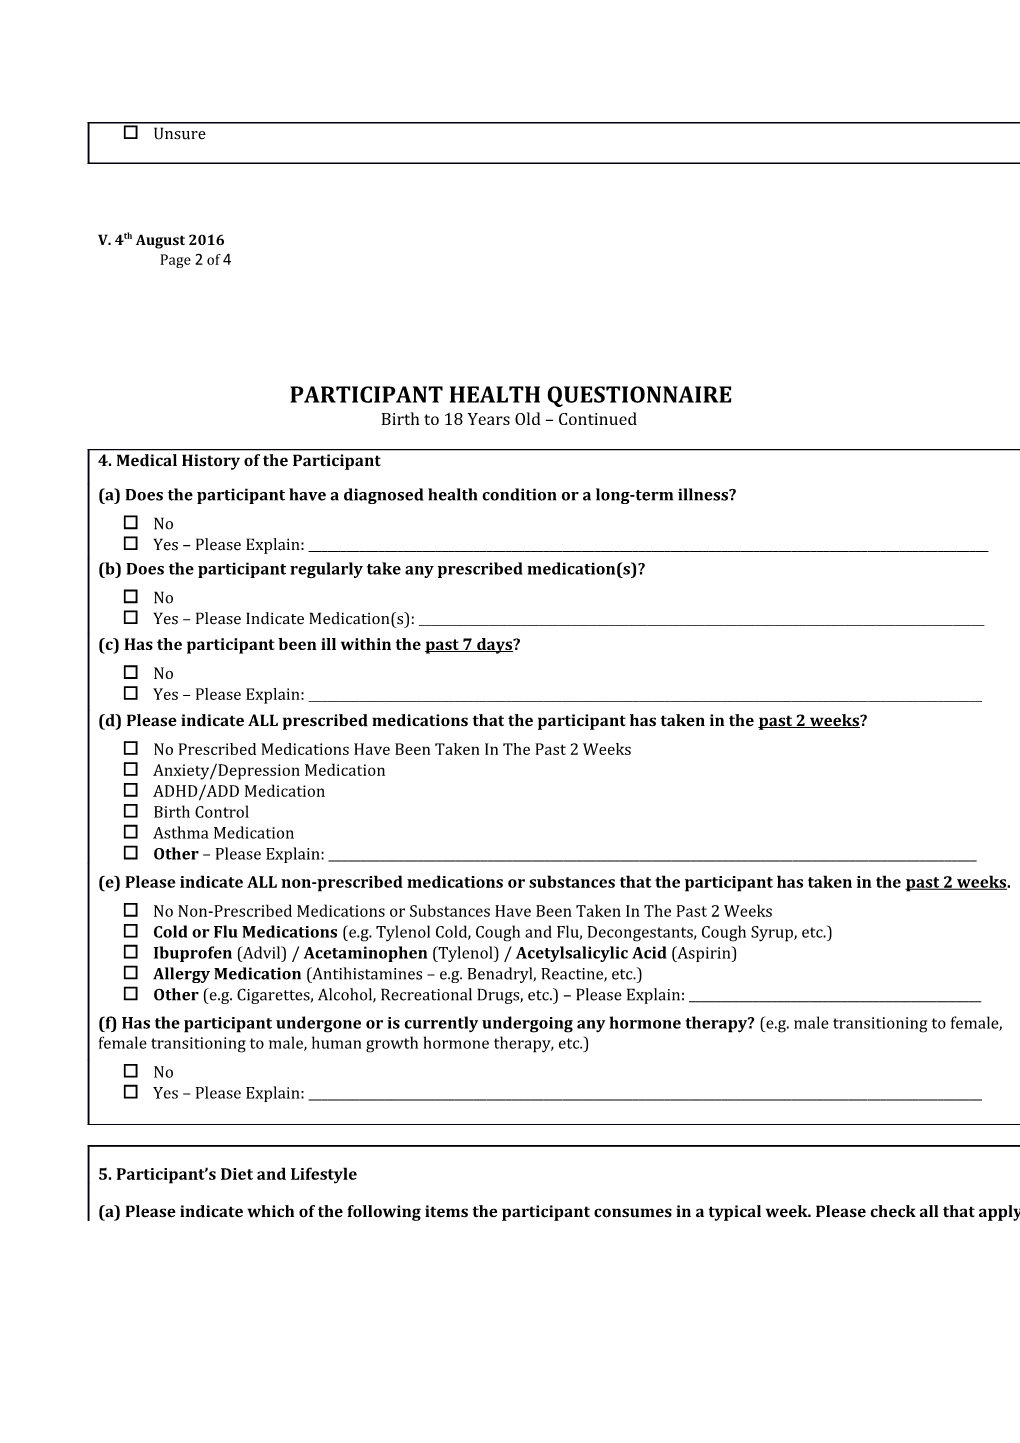 Participant Health Questionnaire